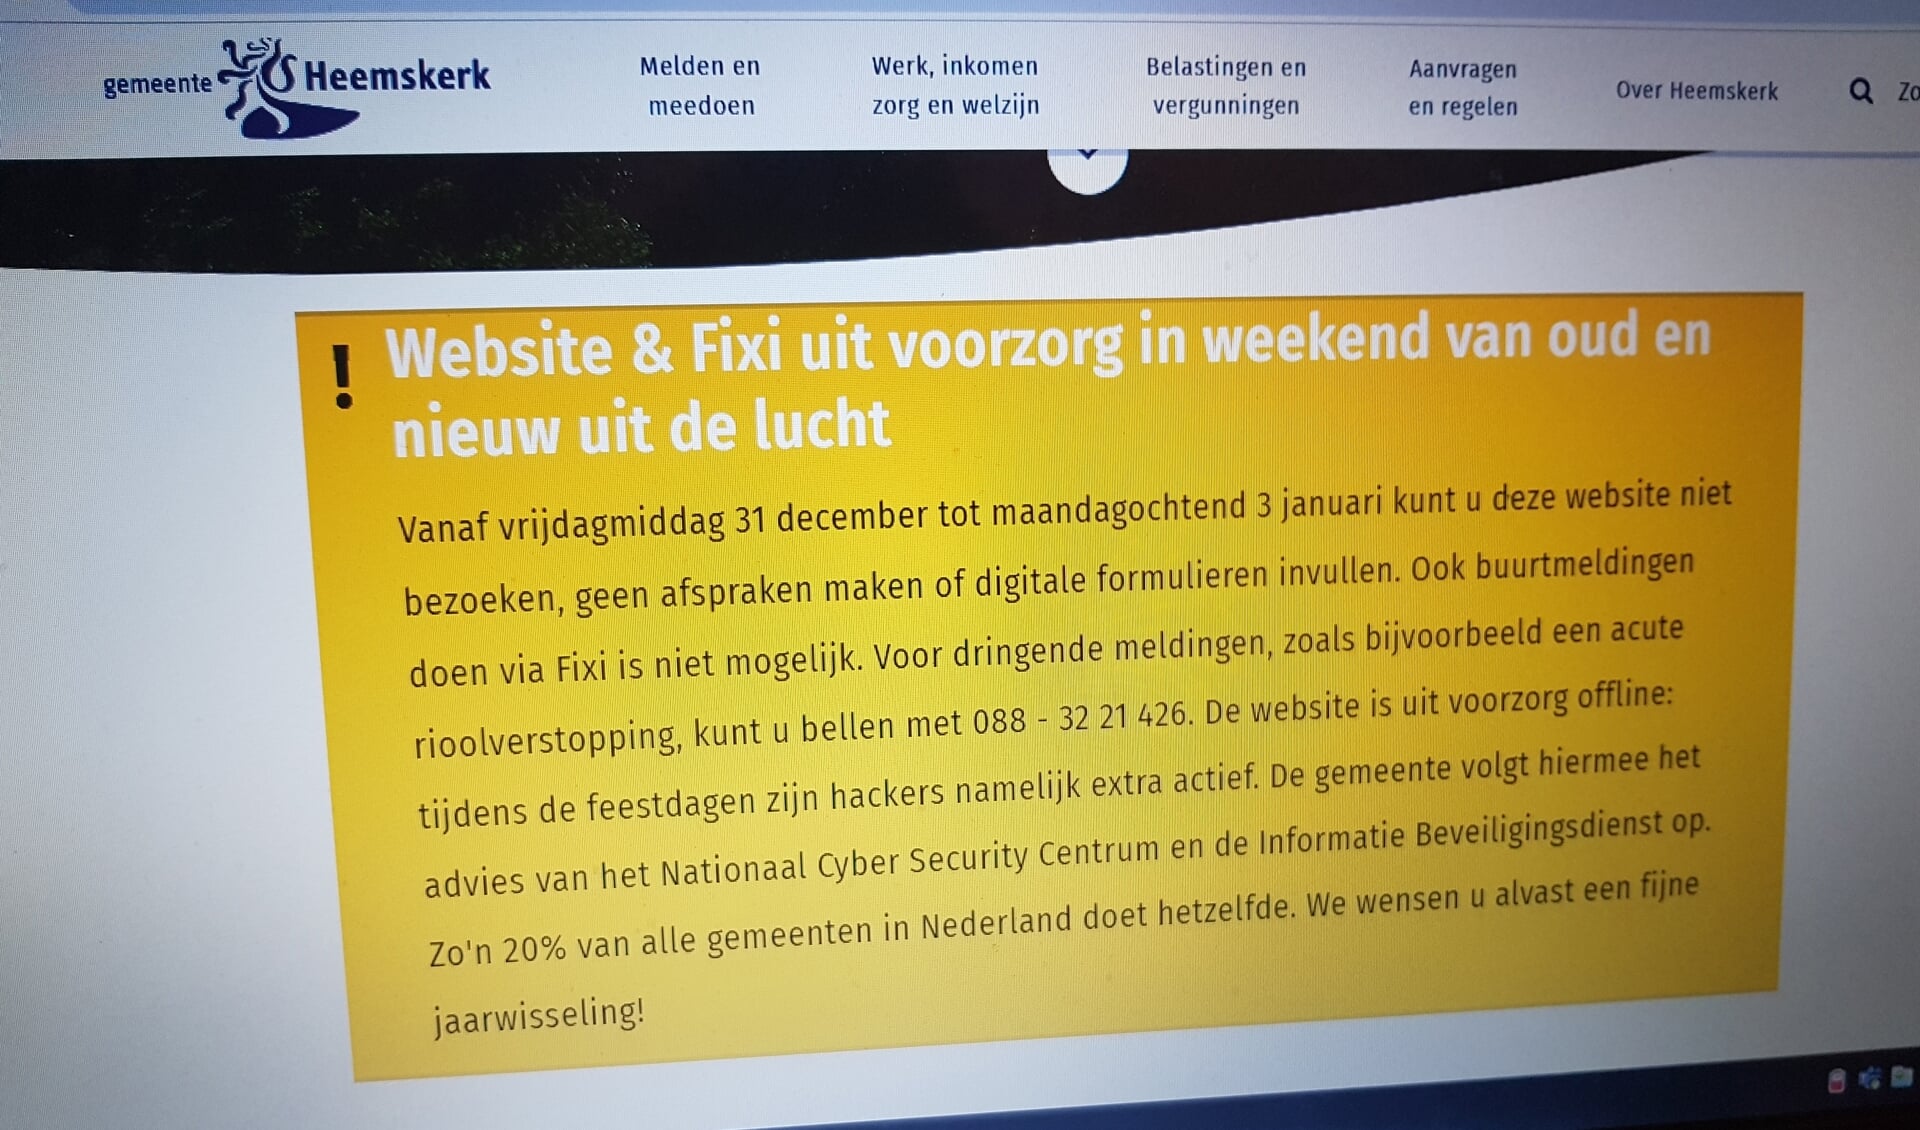 De website van de gemeente Heemskerk gaat met oud en nieuw uit de lucht.